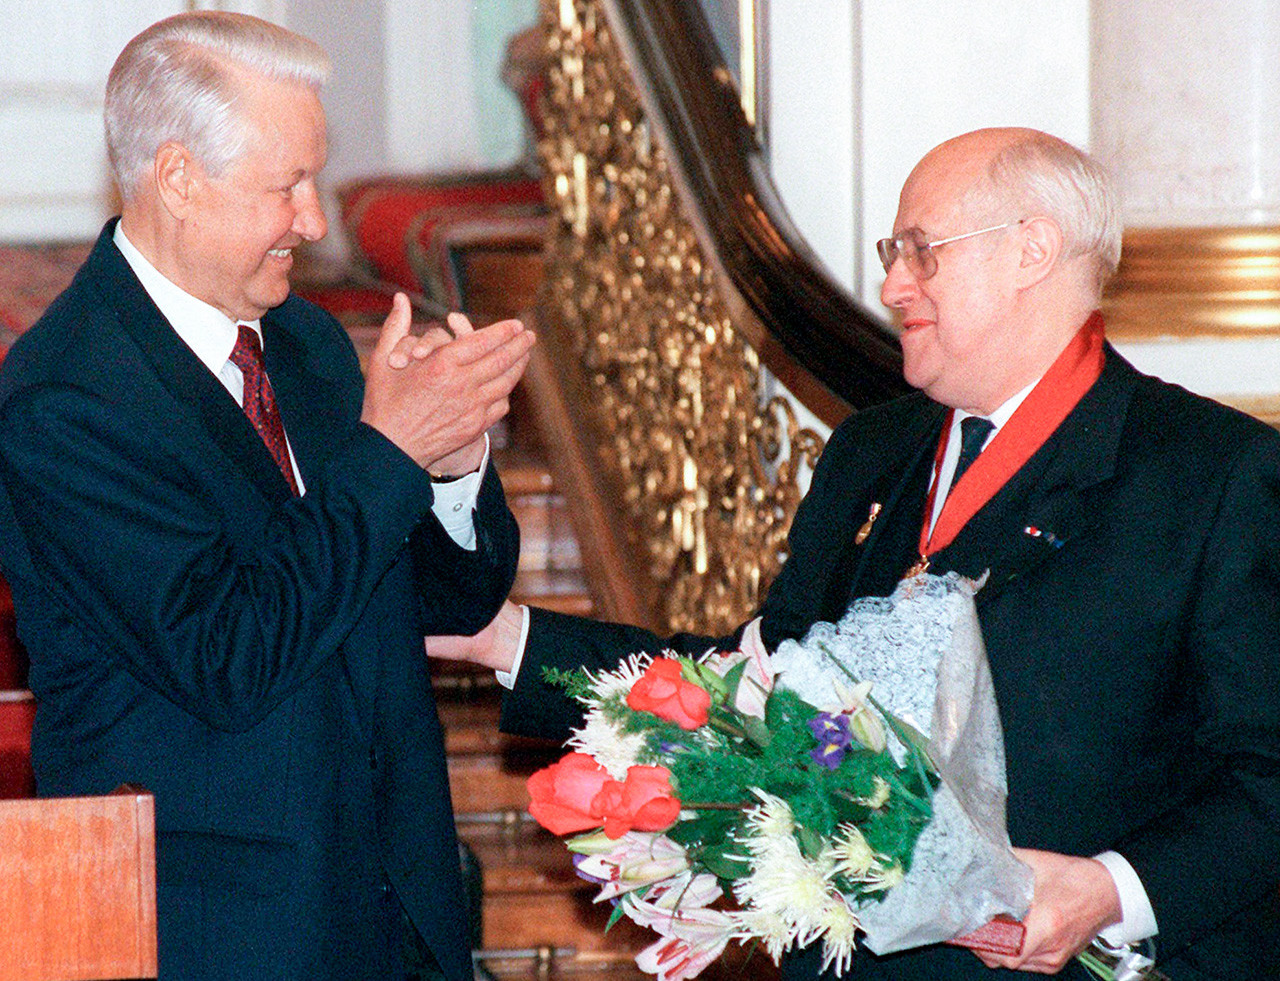 Mstislaw Rostropowitsch und Boris Jelzin